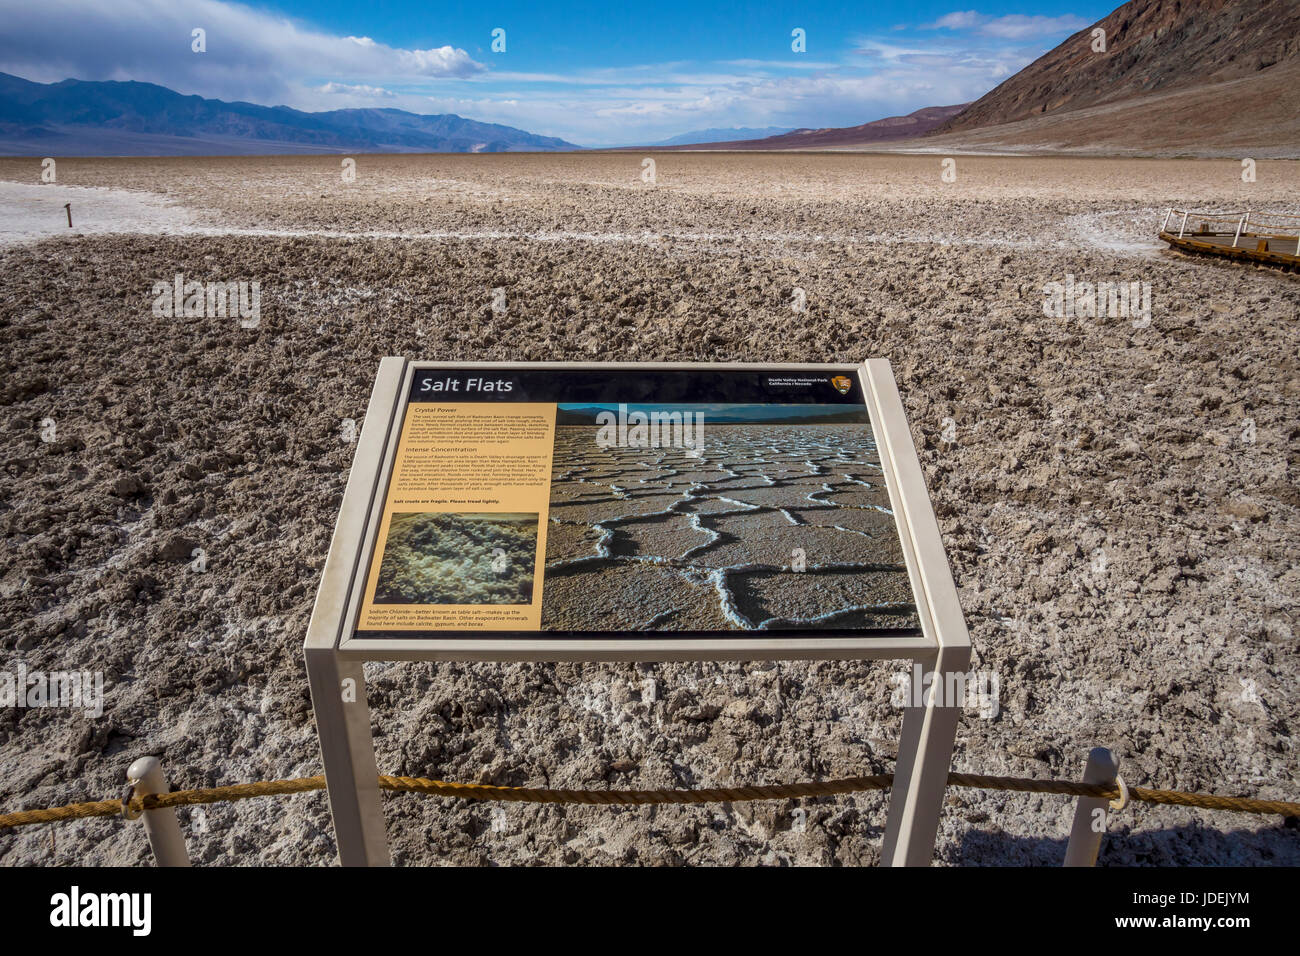 Salt Flats, Badwater Basin, 282 pieds au-dessous du niveau de la mer, Death Valley National Park, Death Valley, Californie Banque D'Images